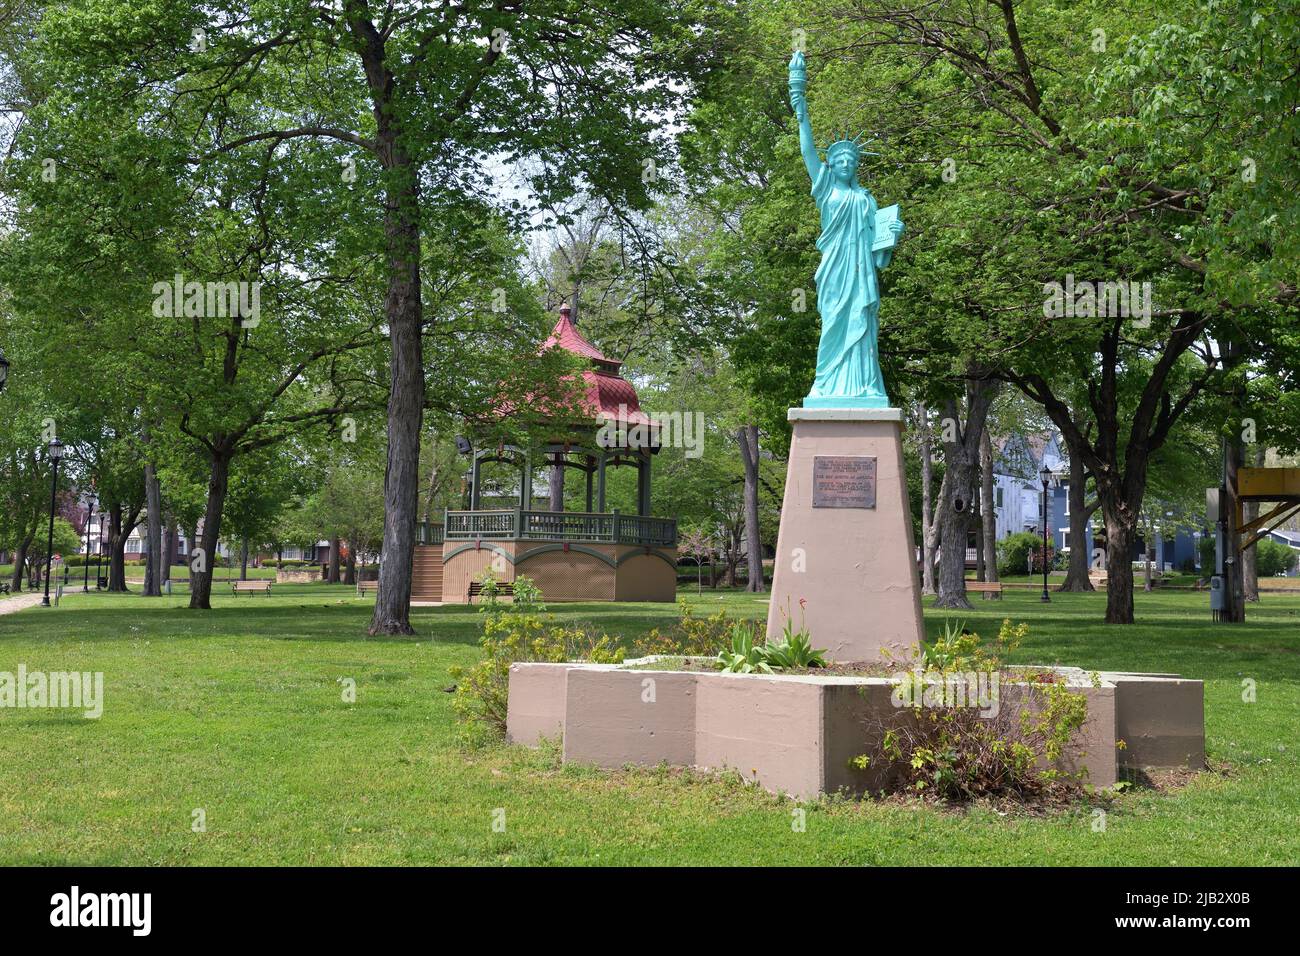 Fort Madison, Iowa, États-Unis. Une réplique de la statue ainsi qu'un belvédère sont les points forts d'un petit parc communautaire du Midwest des États-Unis. Banque D'Images